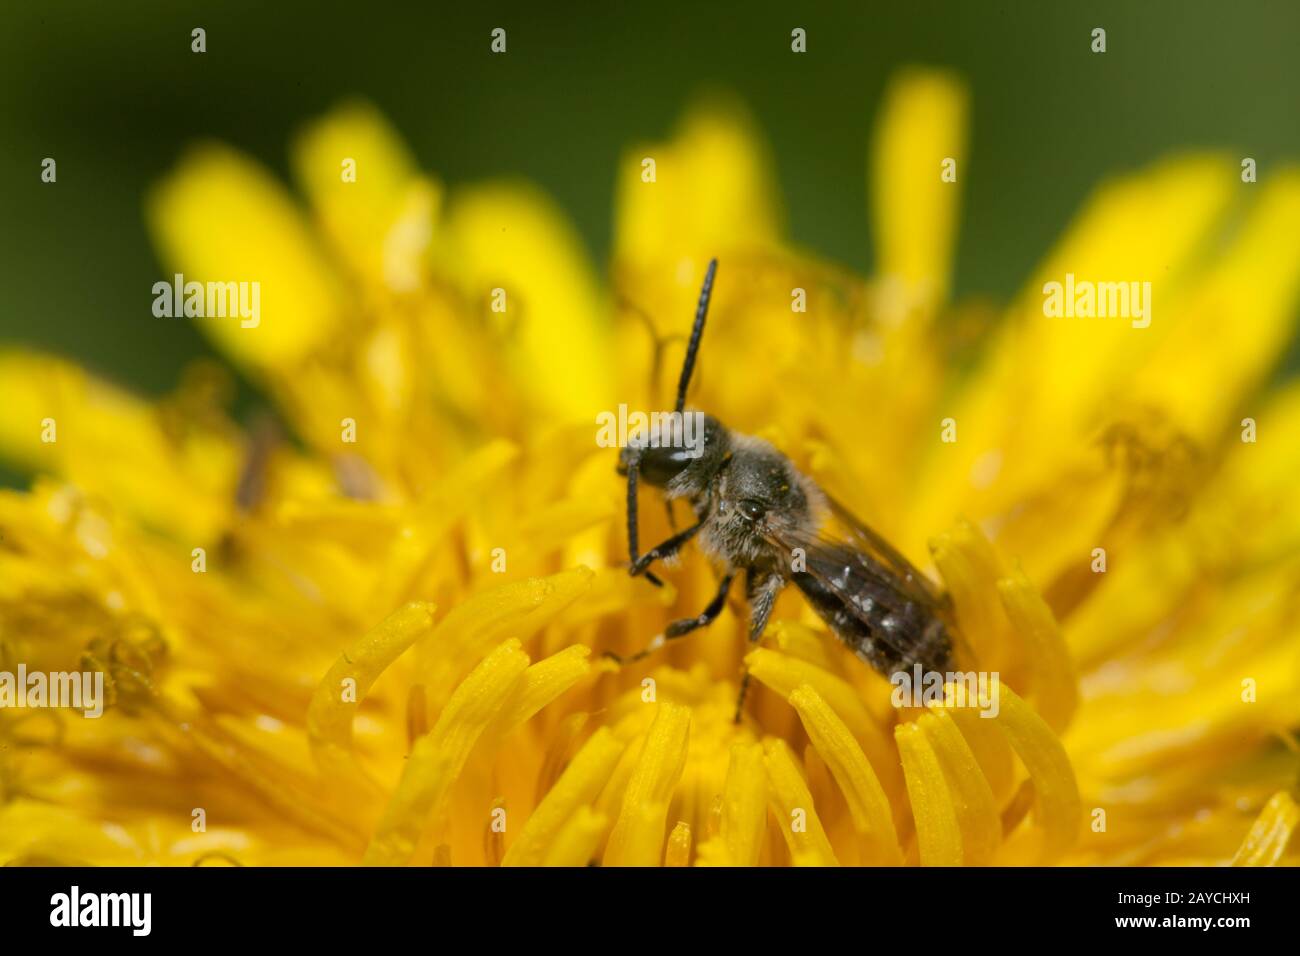 Une petite abeille solitaire (famille des Apidae, genre Lamioglossum) dans une fleur de pissenlit Banque D'Images